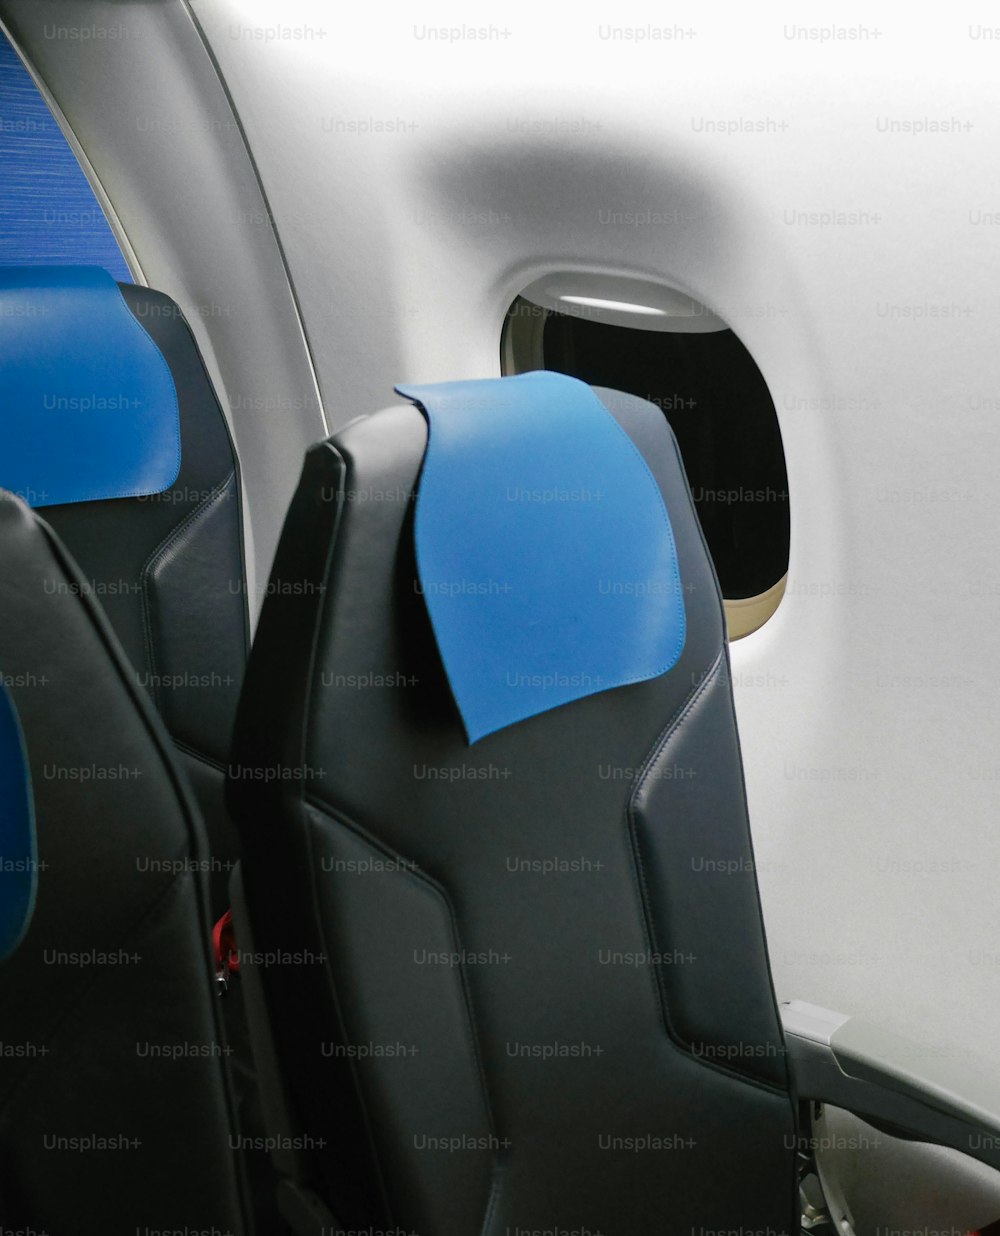 os assentos no avião são azuis e pretos